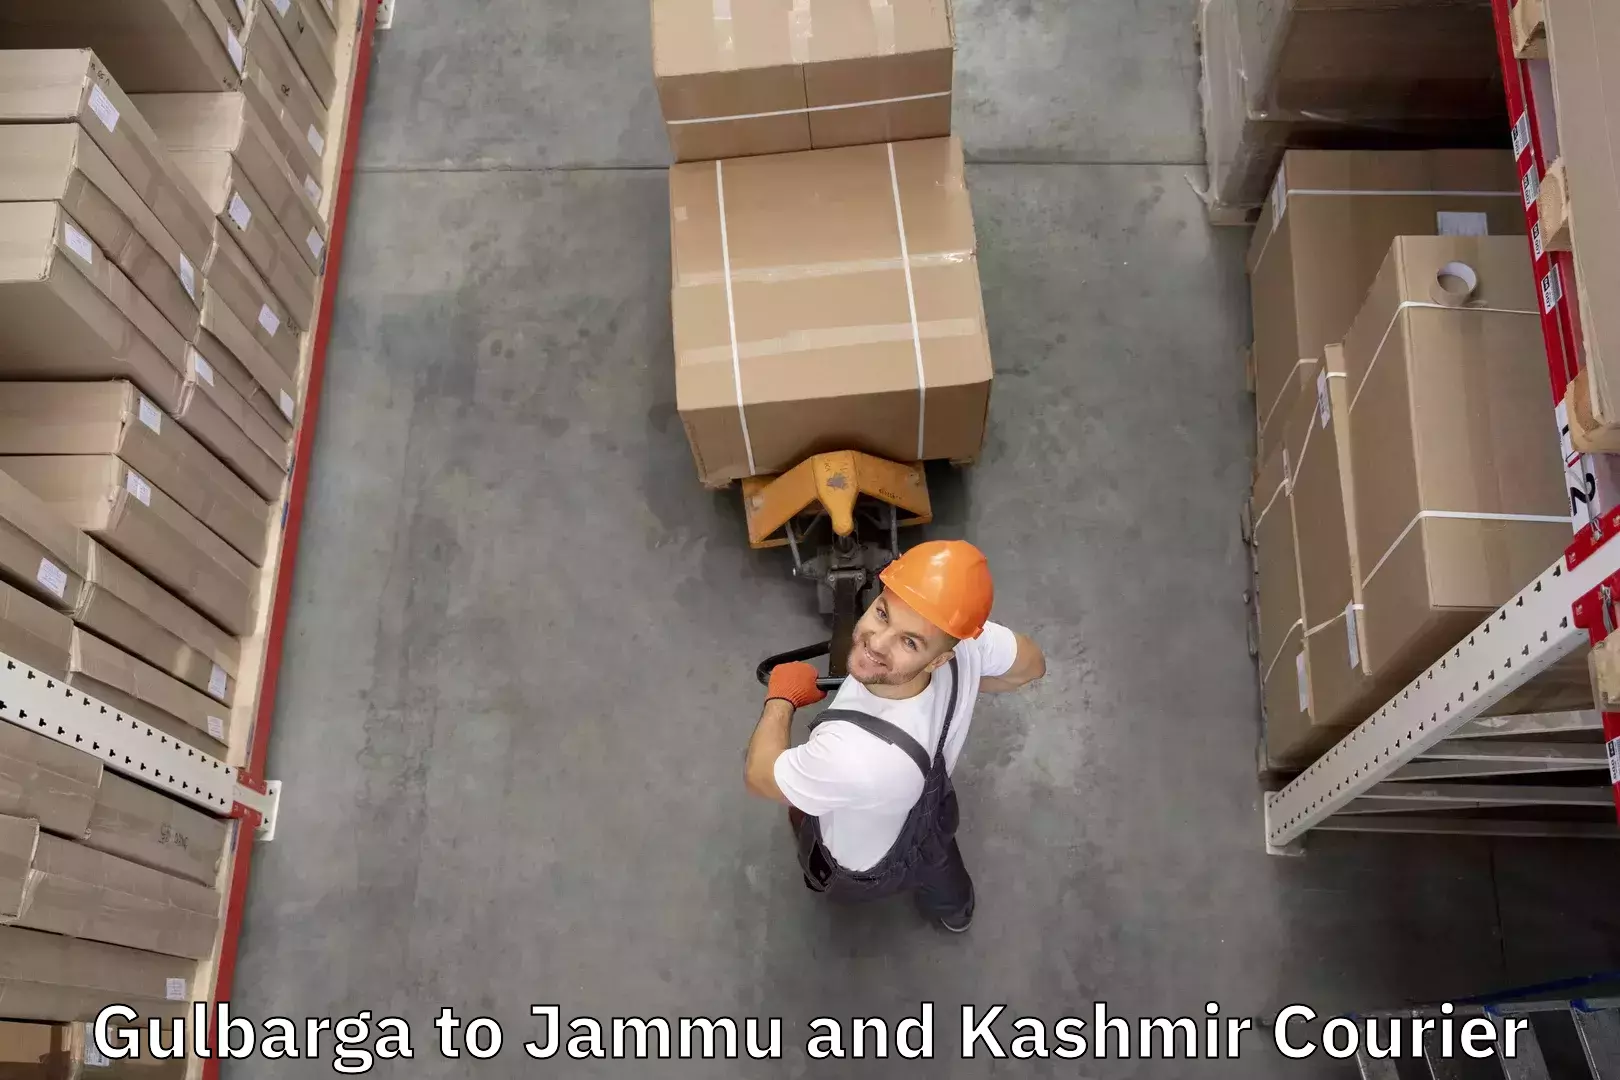 Baggage transport technology Gulbarga to Jammu